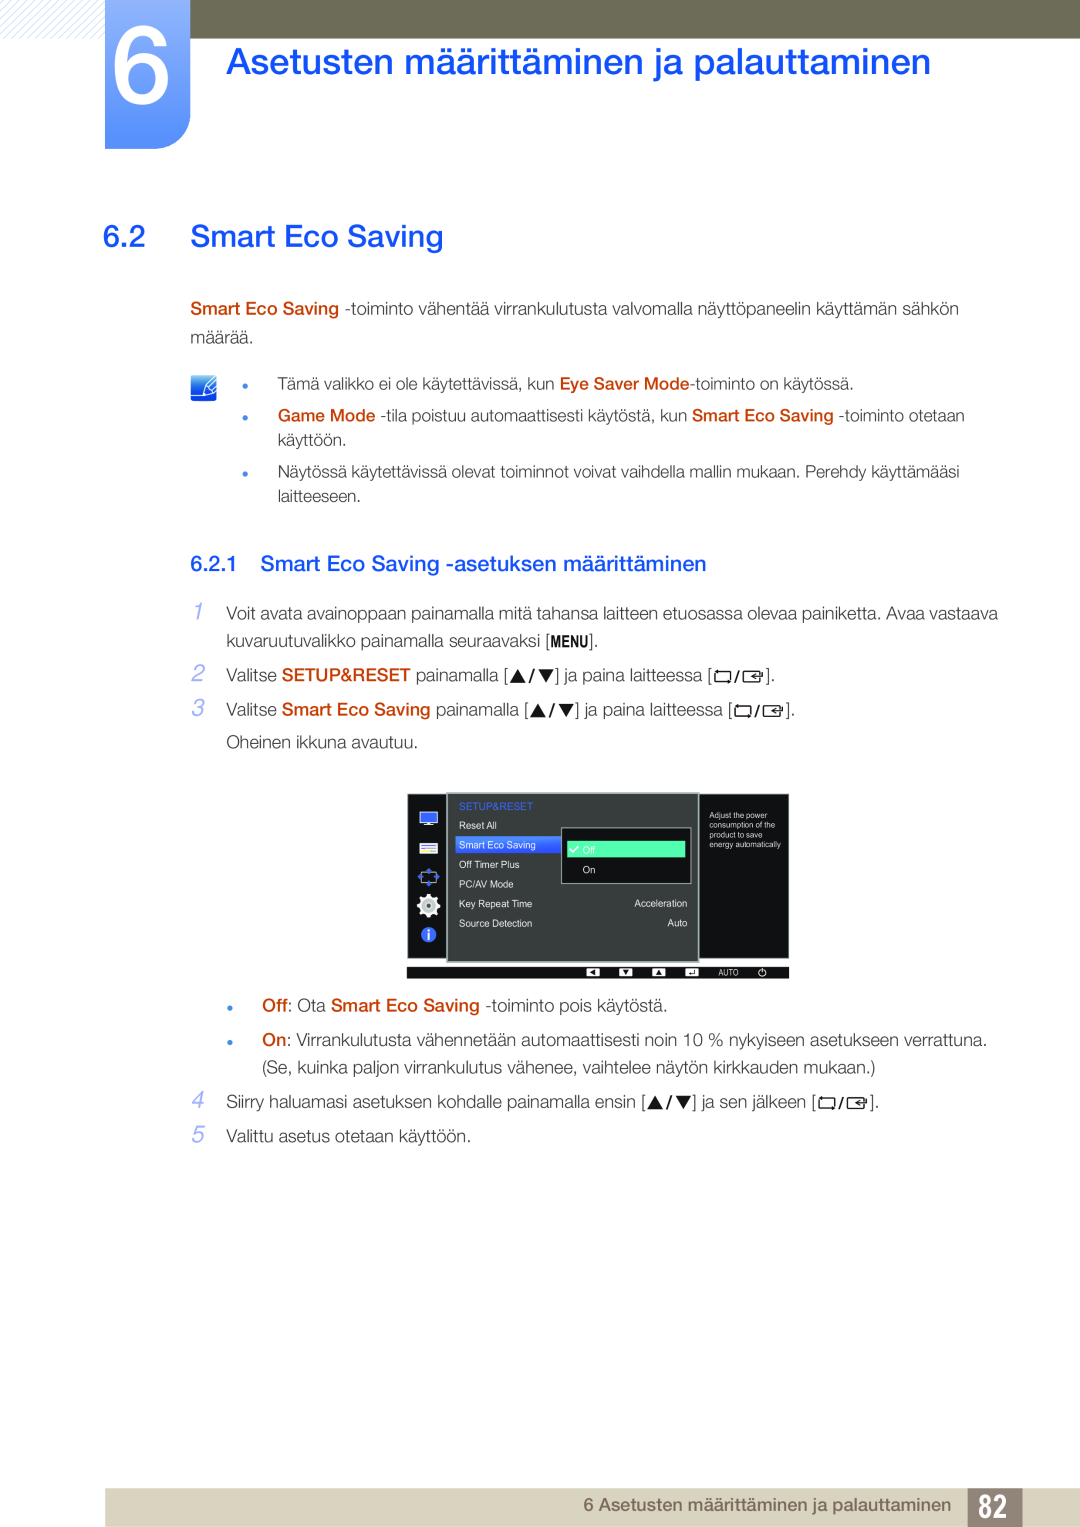 Samsung LS24E65KBWV/EN manual Smart Eco Saving -asetuksen määrittäminen, Asetusten määrittäminen ja palauttaminen 